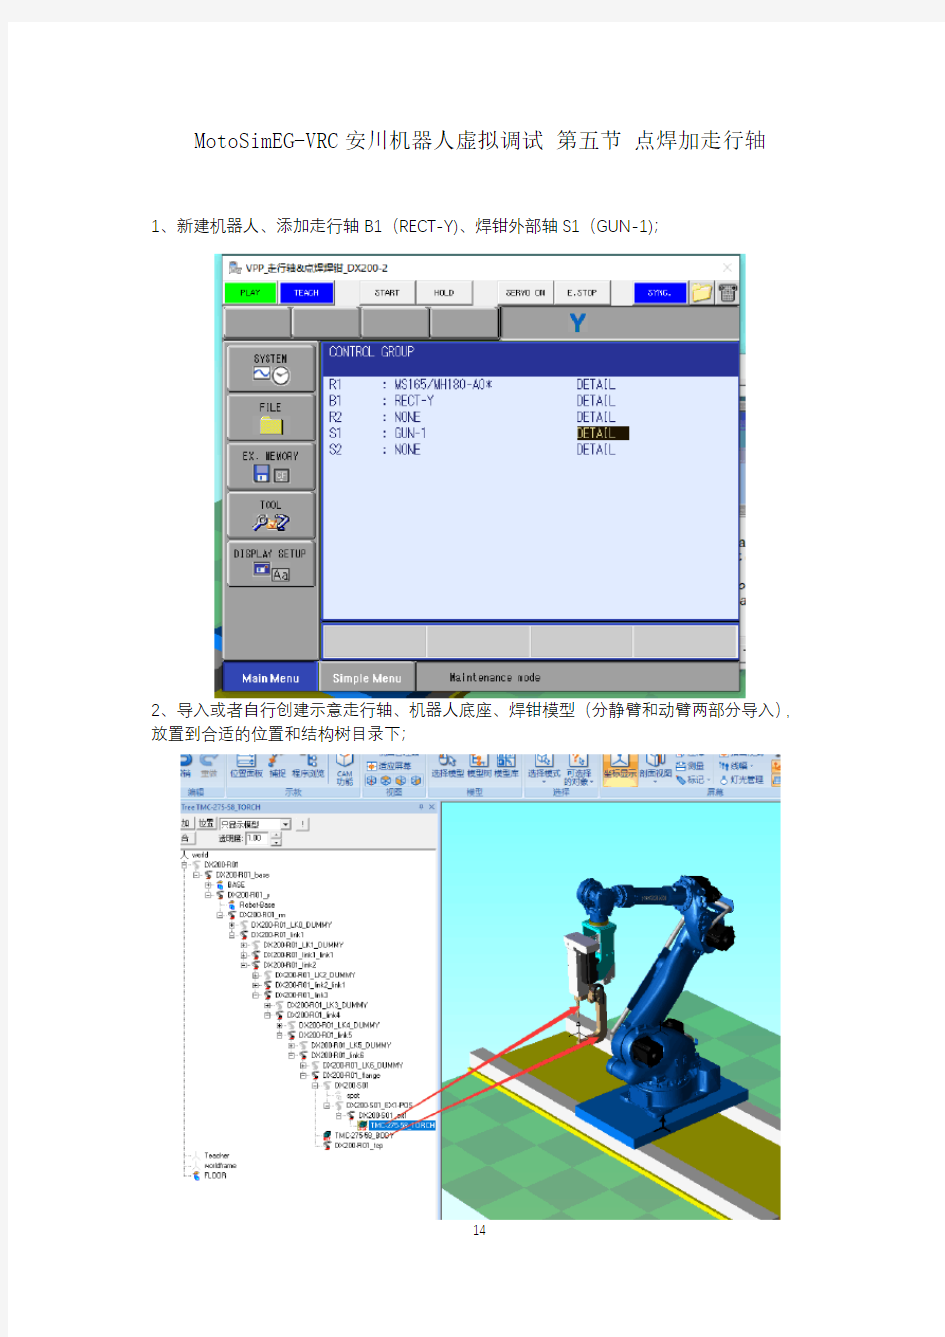 MotoSimEG-VRC安川机器人虚拟调试 第五节 点焊加走行轴